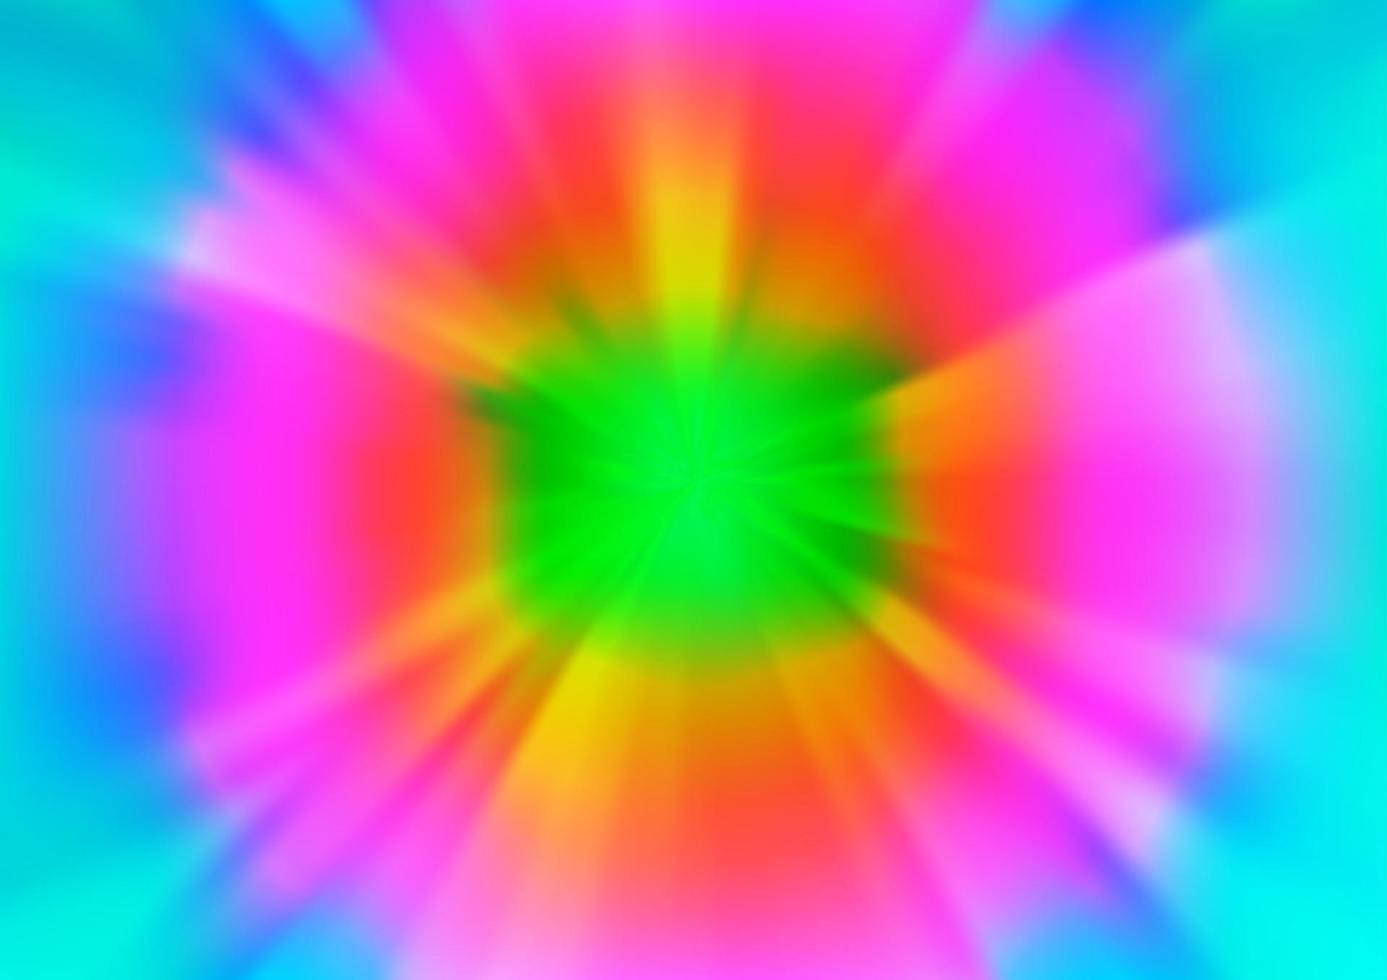 multicolor claro, patrón de desenfoque de vector de arco iris.